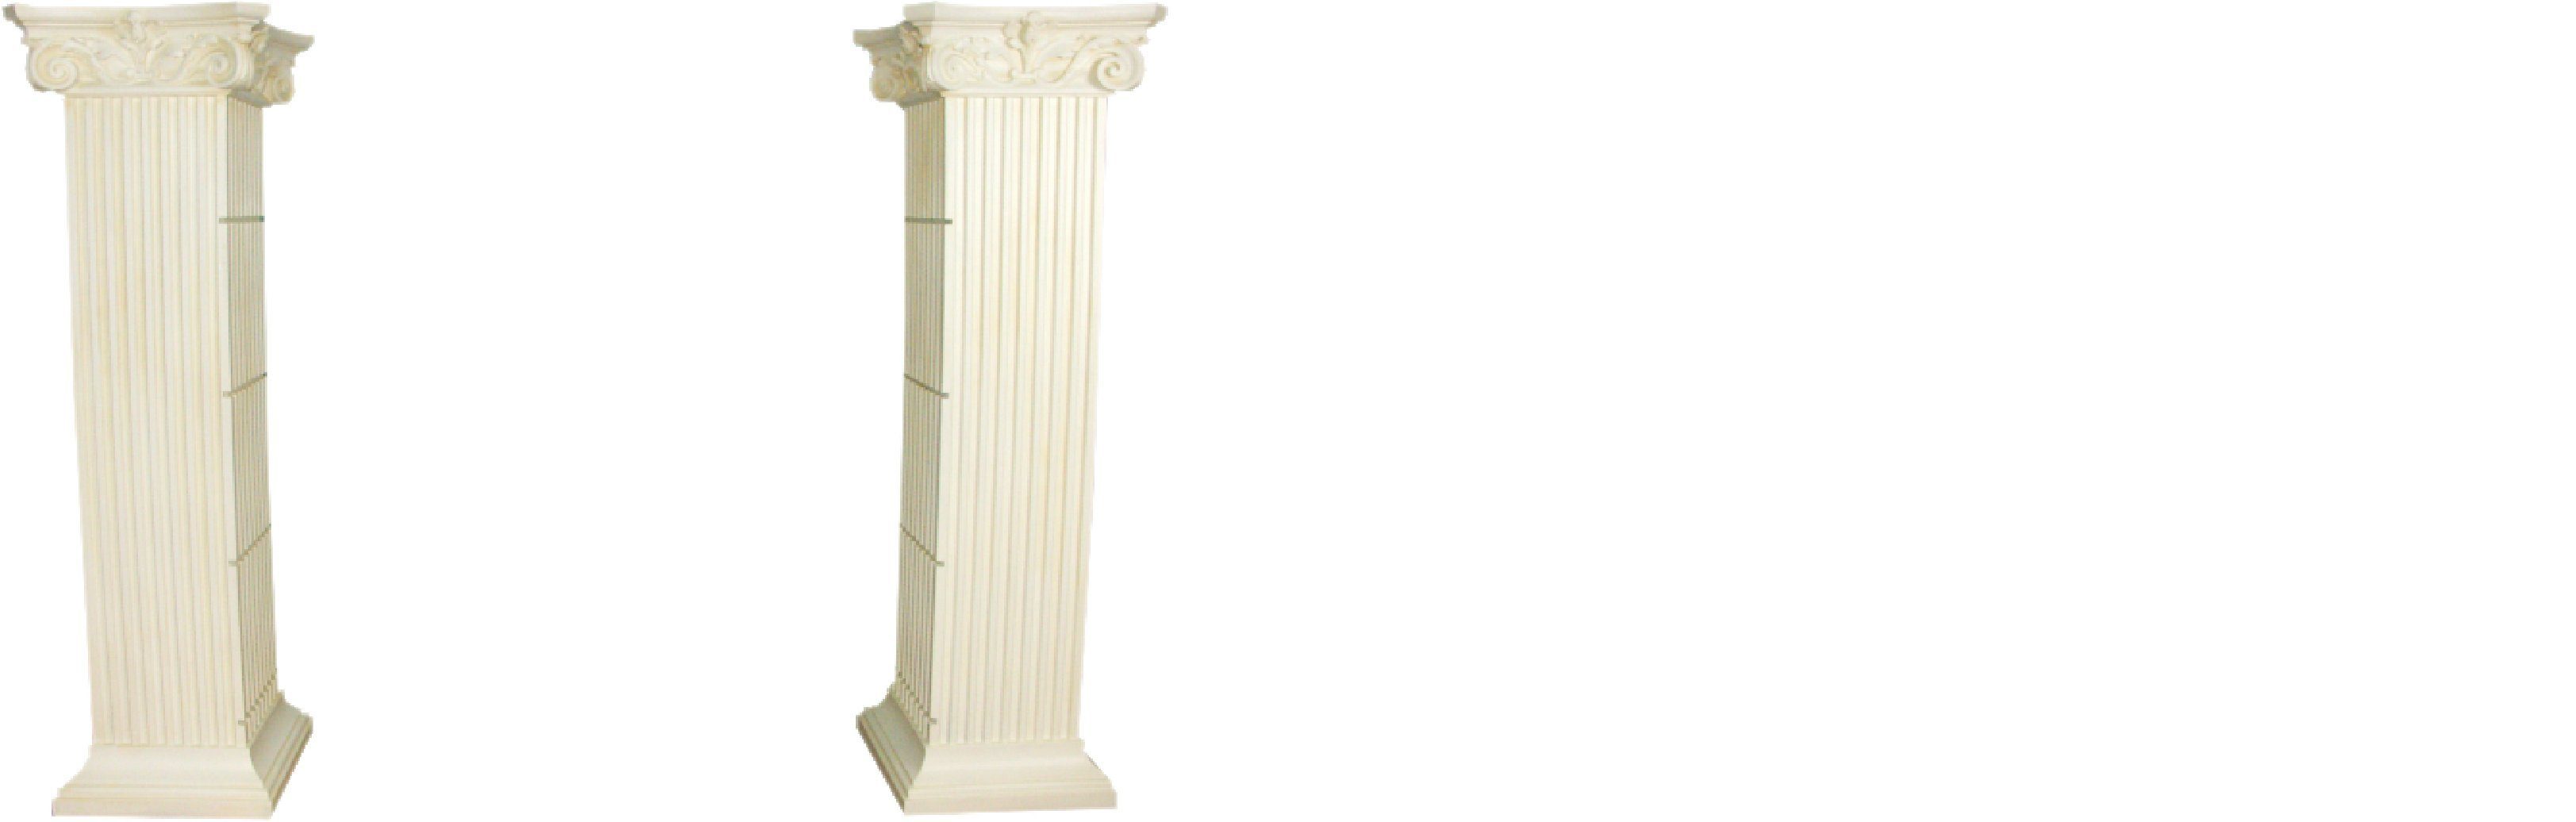 JVmoebel Skulptur Regal Glas Vitrine Römische Säulen Regale Vitrinen XXL 210cm Säule